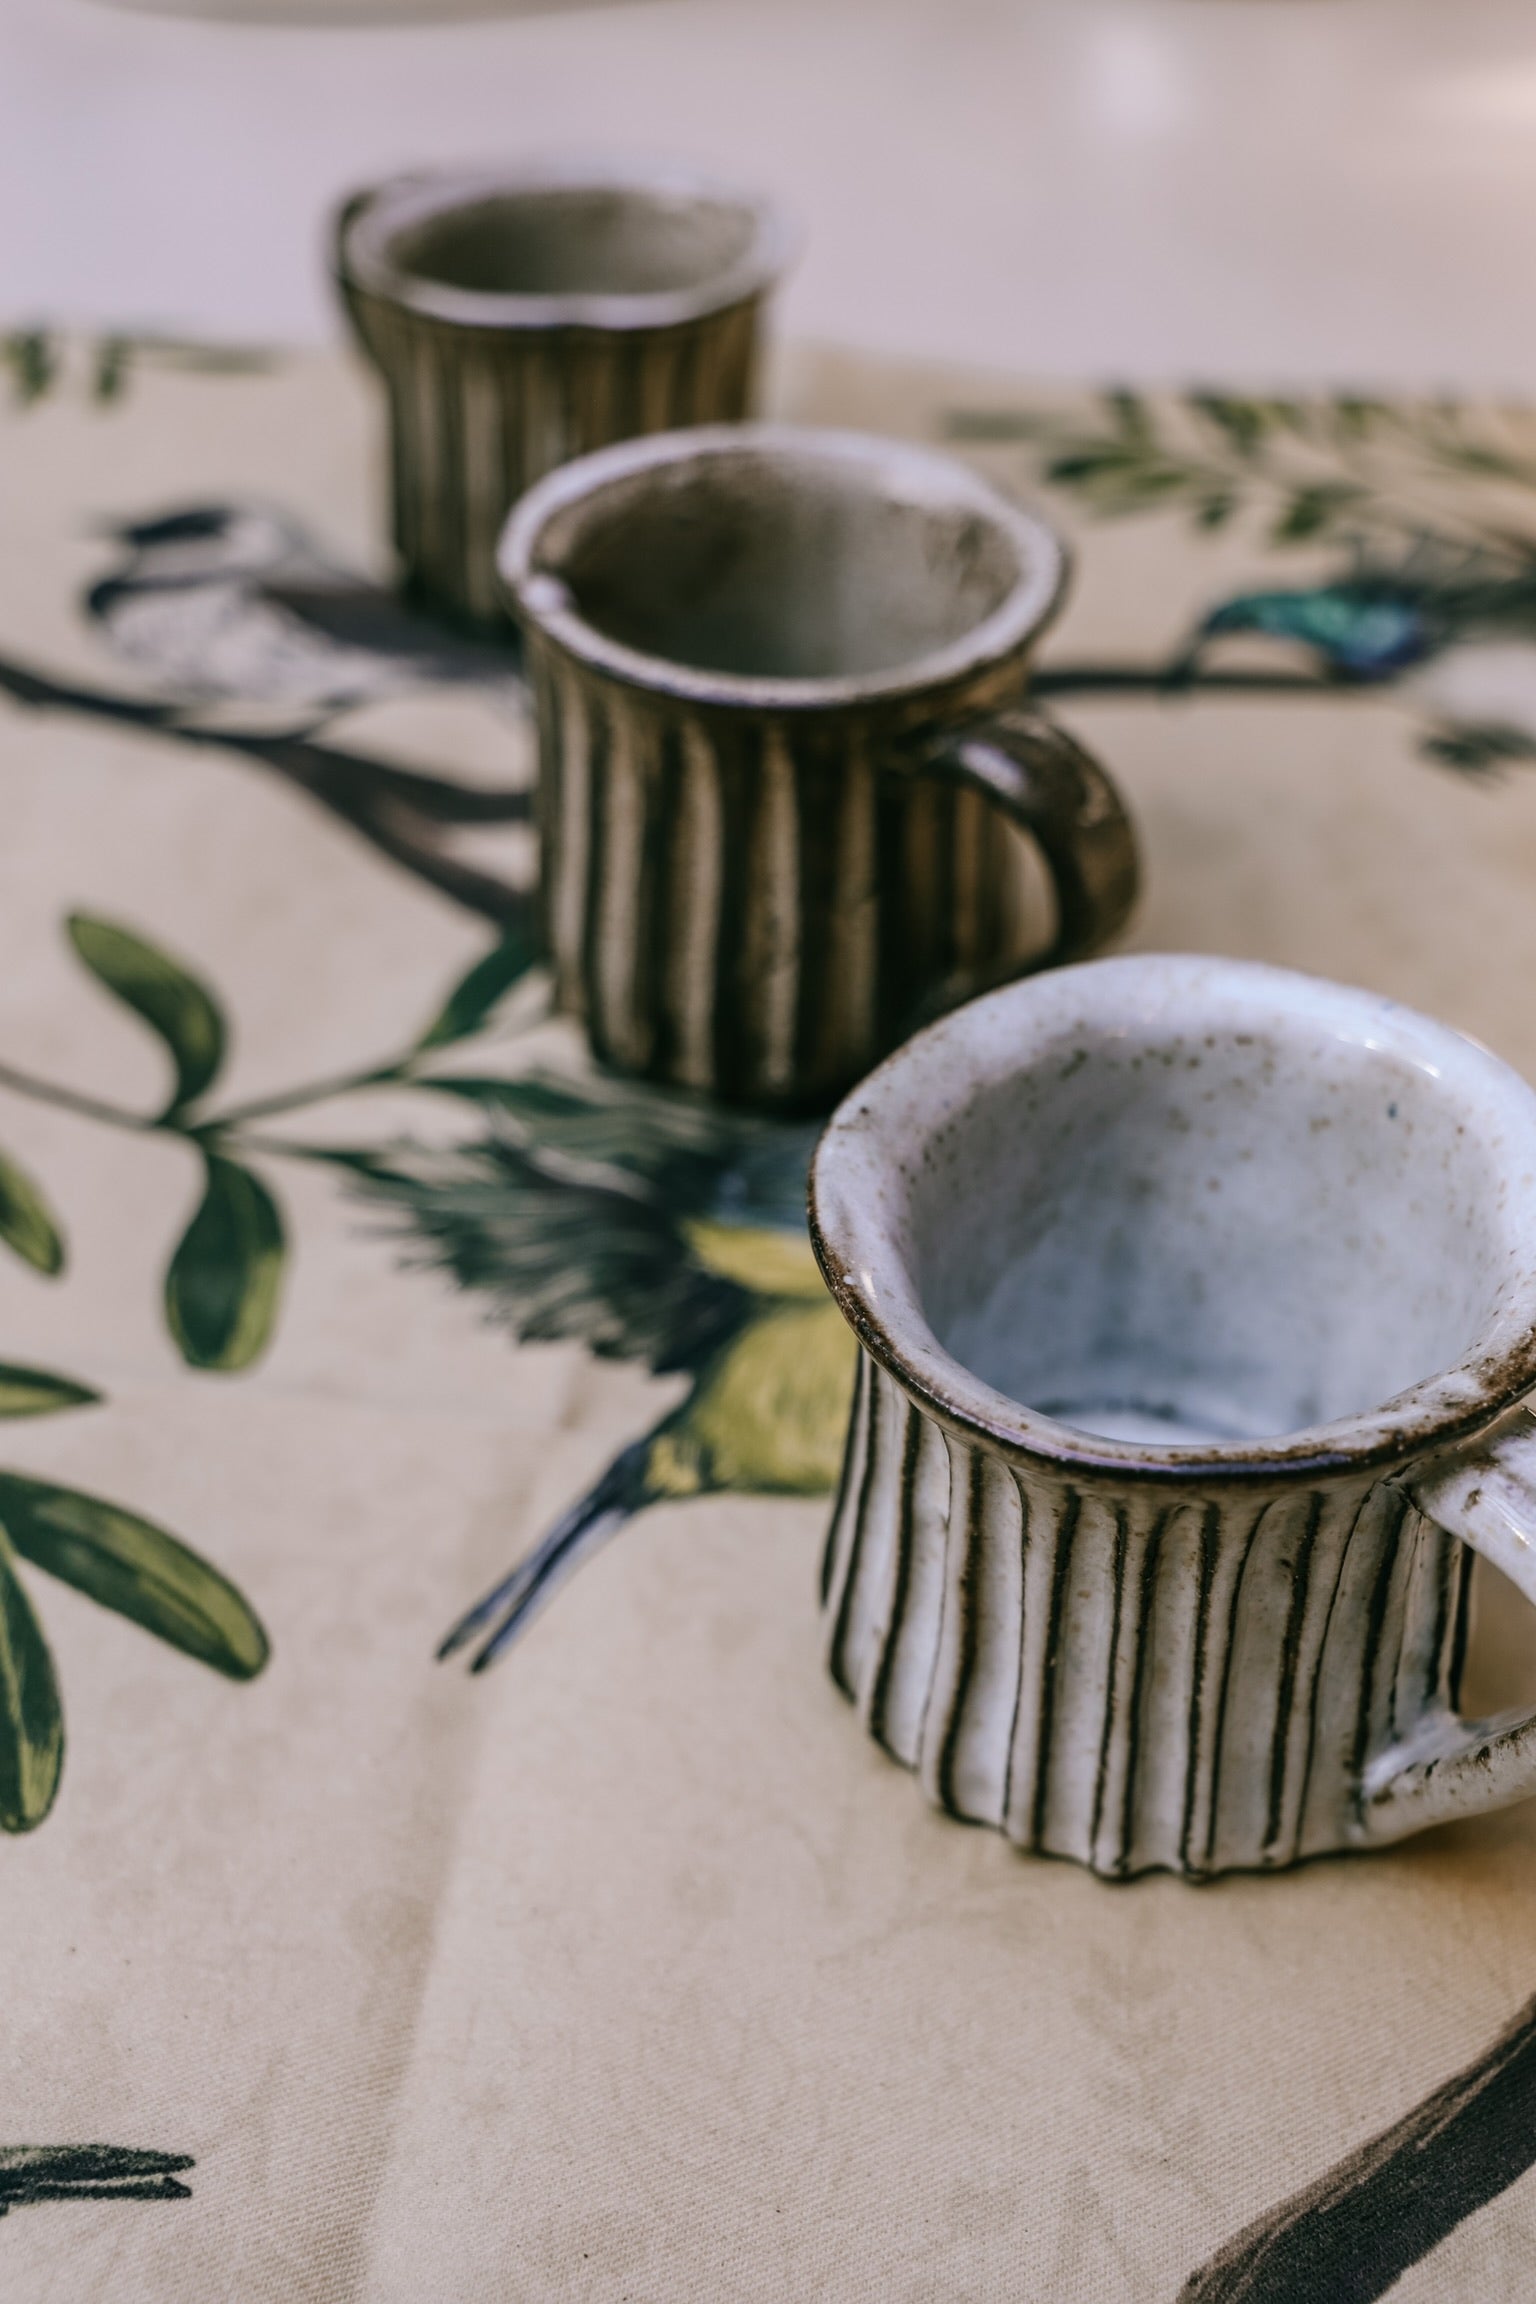 Handmade Fluted Mugs